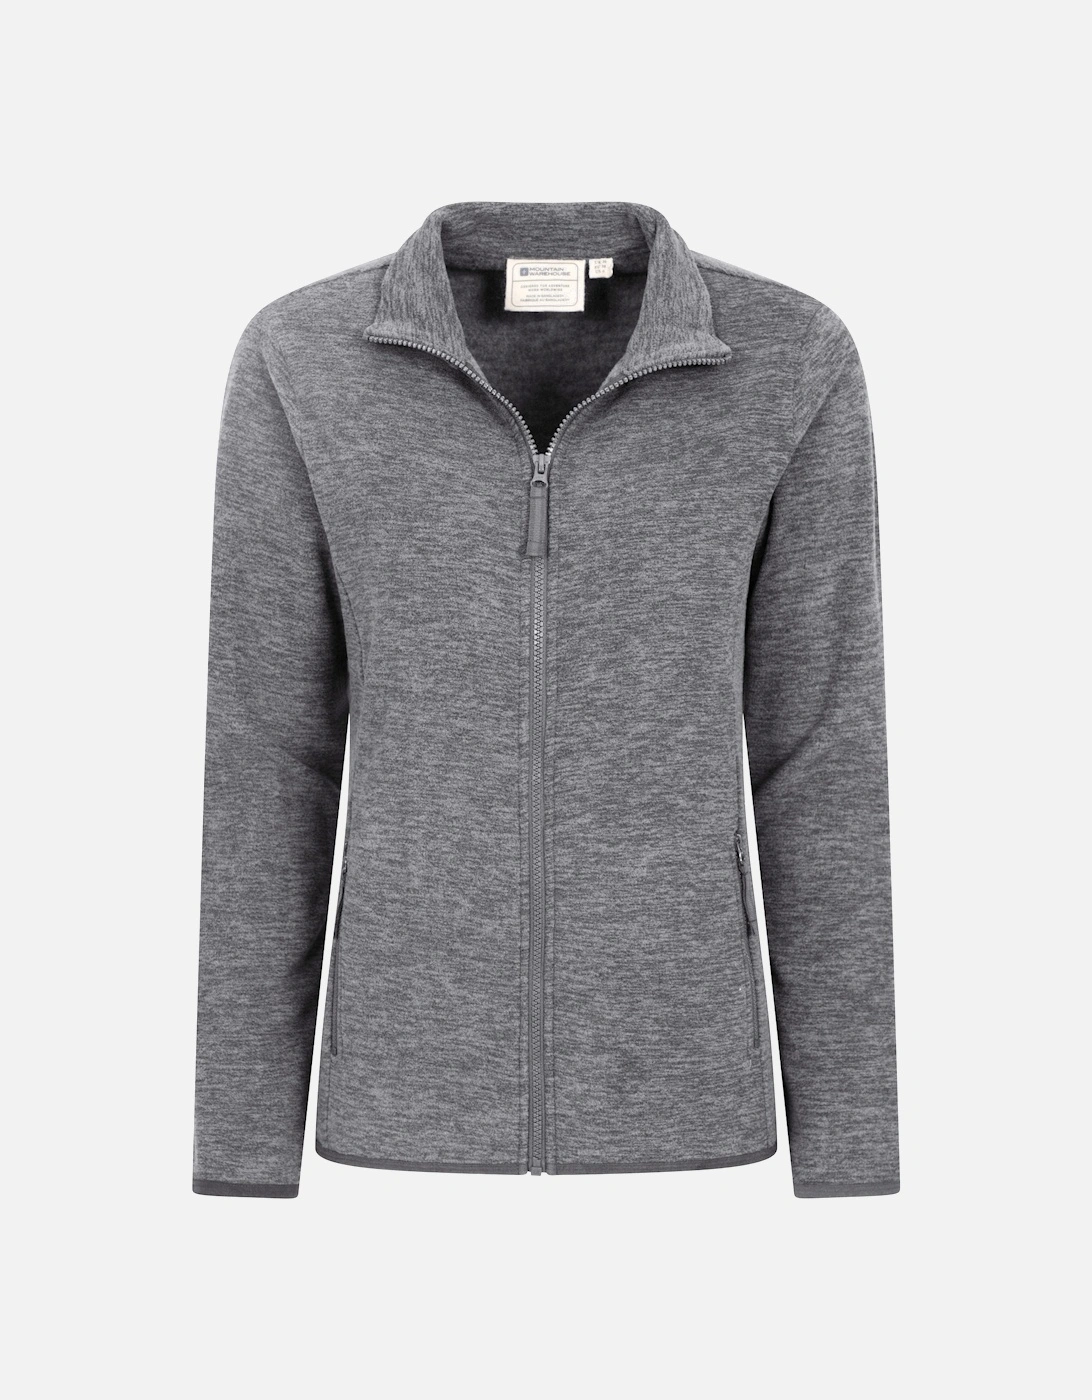 Womens/Ladies Snowdon II Melange Full Zip Fleece Jacket